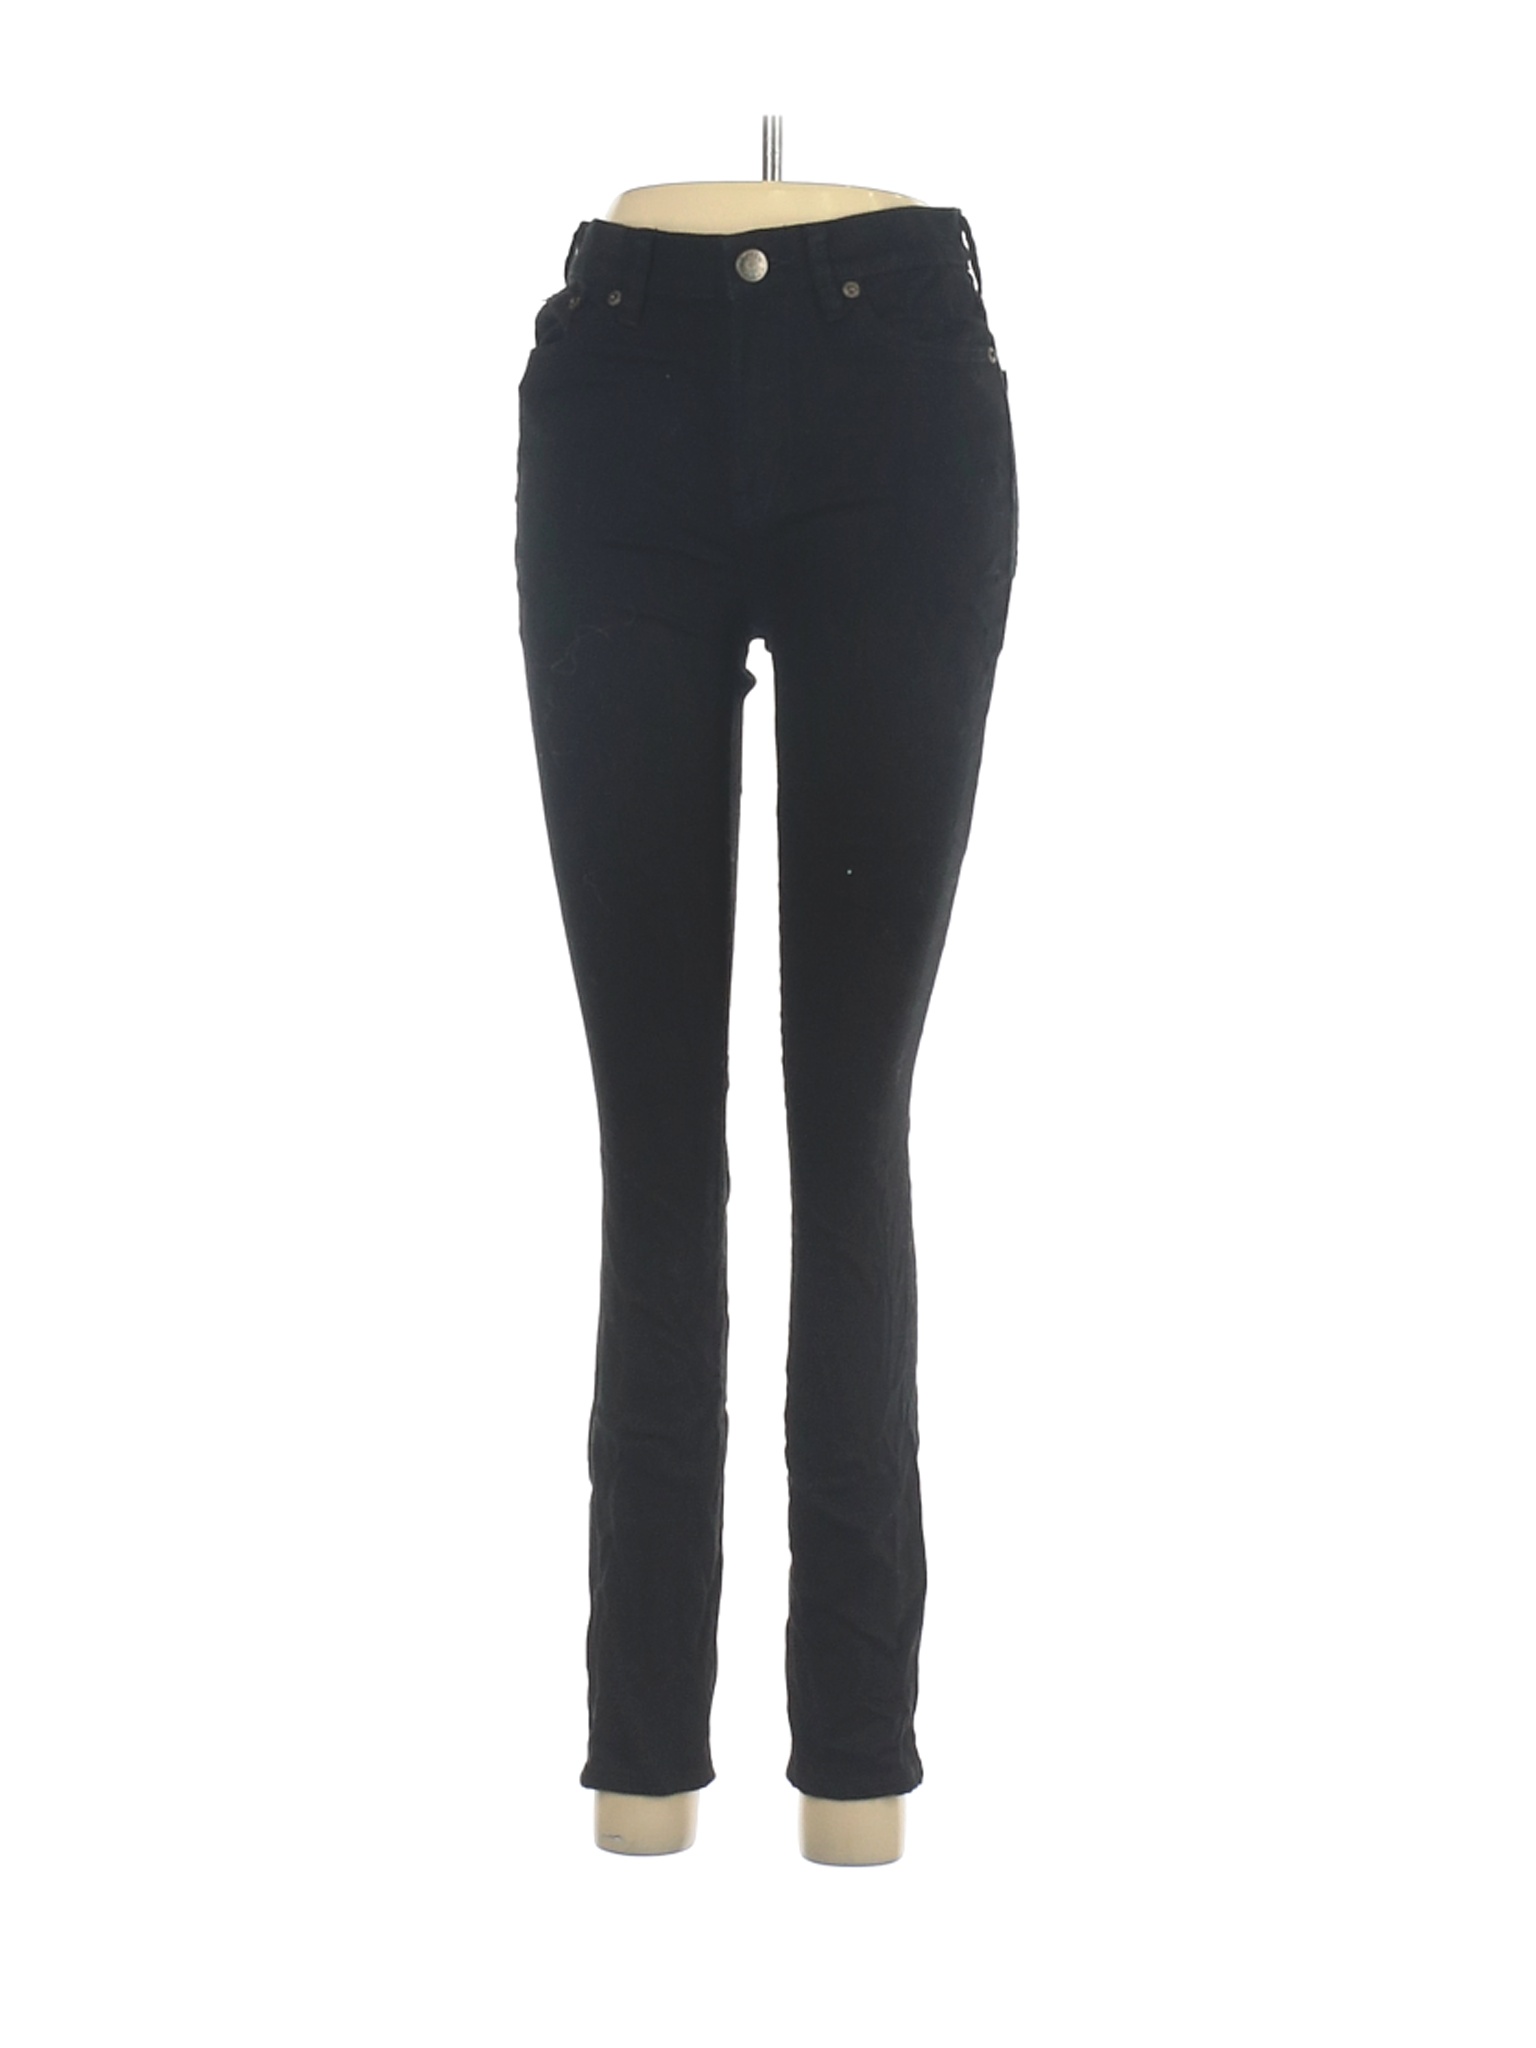 J.Crew Women Black Jeans 28W | eBay